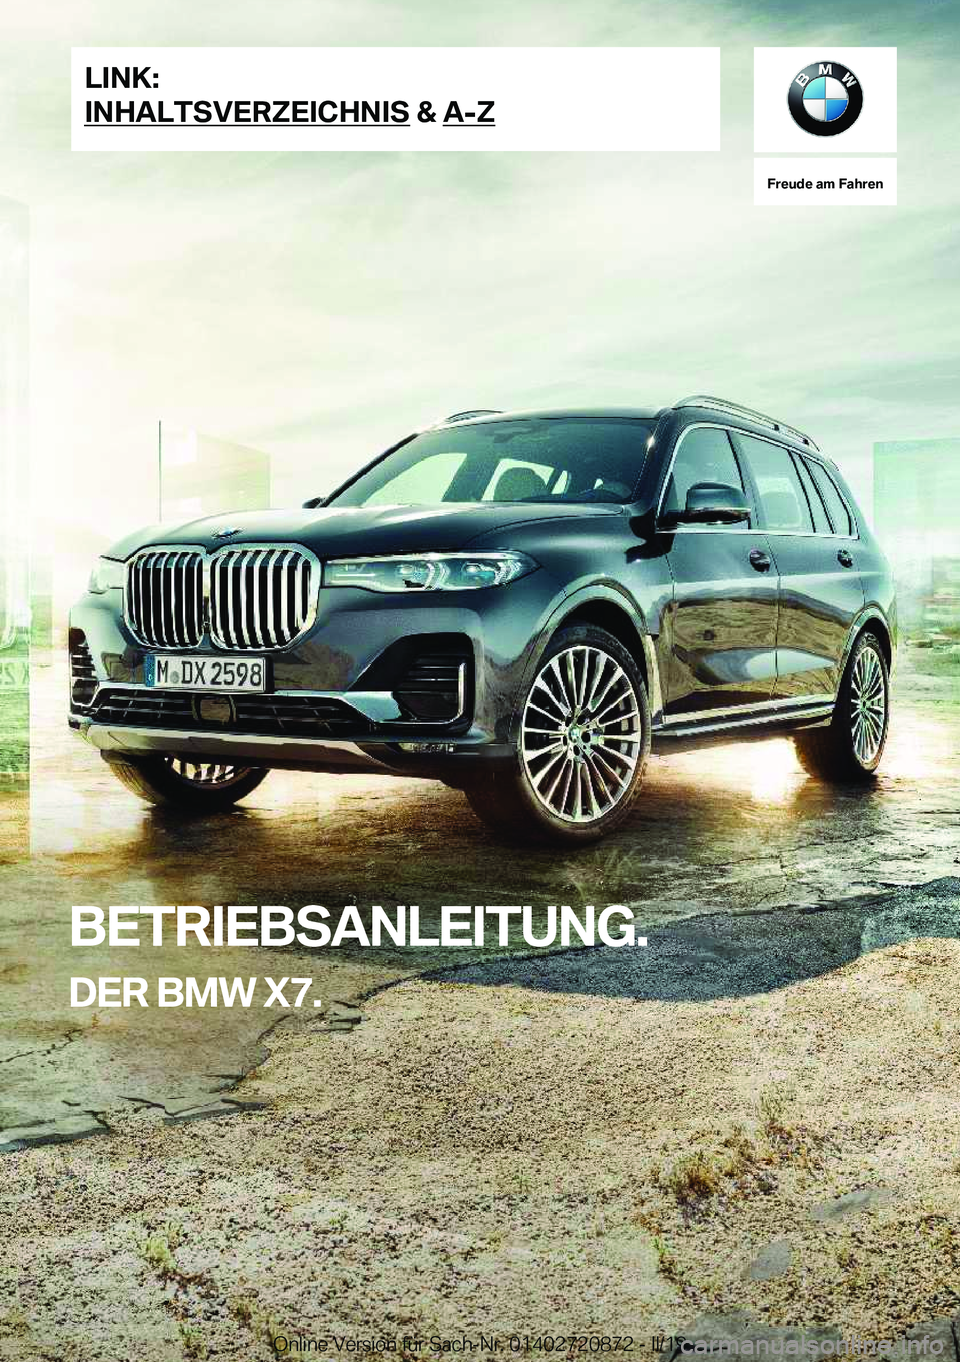 BMW X7 2019  Betriebsanleitungen (in German) �F�r�e�u�d�e��a�m��F�a�h�r�e�n
�B�E�T�R�I�E�B�S�A�N�L�E�I�T�U�N�G�.�D�E�R��B�M�W��X�7�.�L�I�N�K�:
�I�N�H�A�L�T�S�V�E�R�Z�E�I�C�H�N�I�S��&��A�-�Z�O�n�l�i�n�e��V�e�r�s�i�o�n��f�